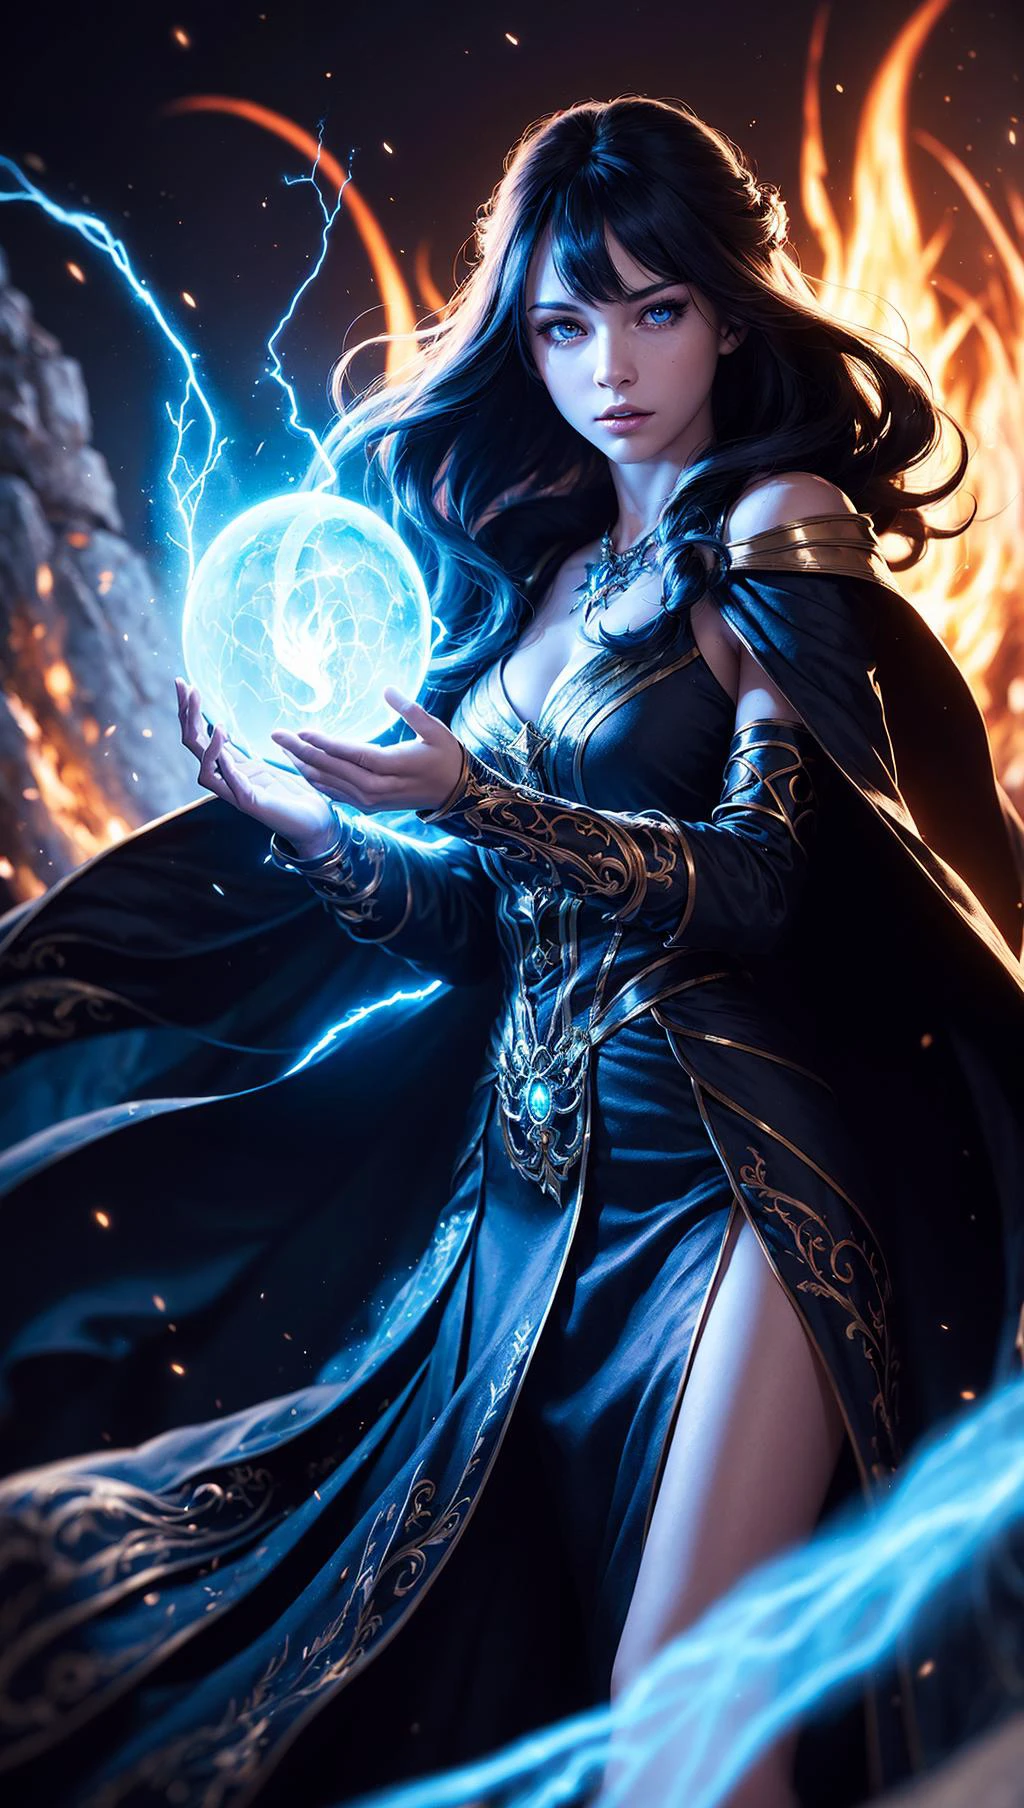 ((1 garota)), sorceress, Magia, usando um vestido longo feito de luzes, Magiaal forest, com fluxo, (((fogo)) Magia), roupas apertadas de feiticeira, Magiaal clothing, (((Penteado fluido))), (((olhos brilhantes))), vestindo capa, ((bokeh)), profundidade de campo, 